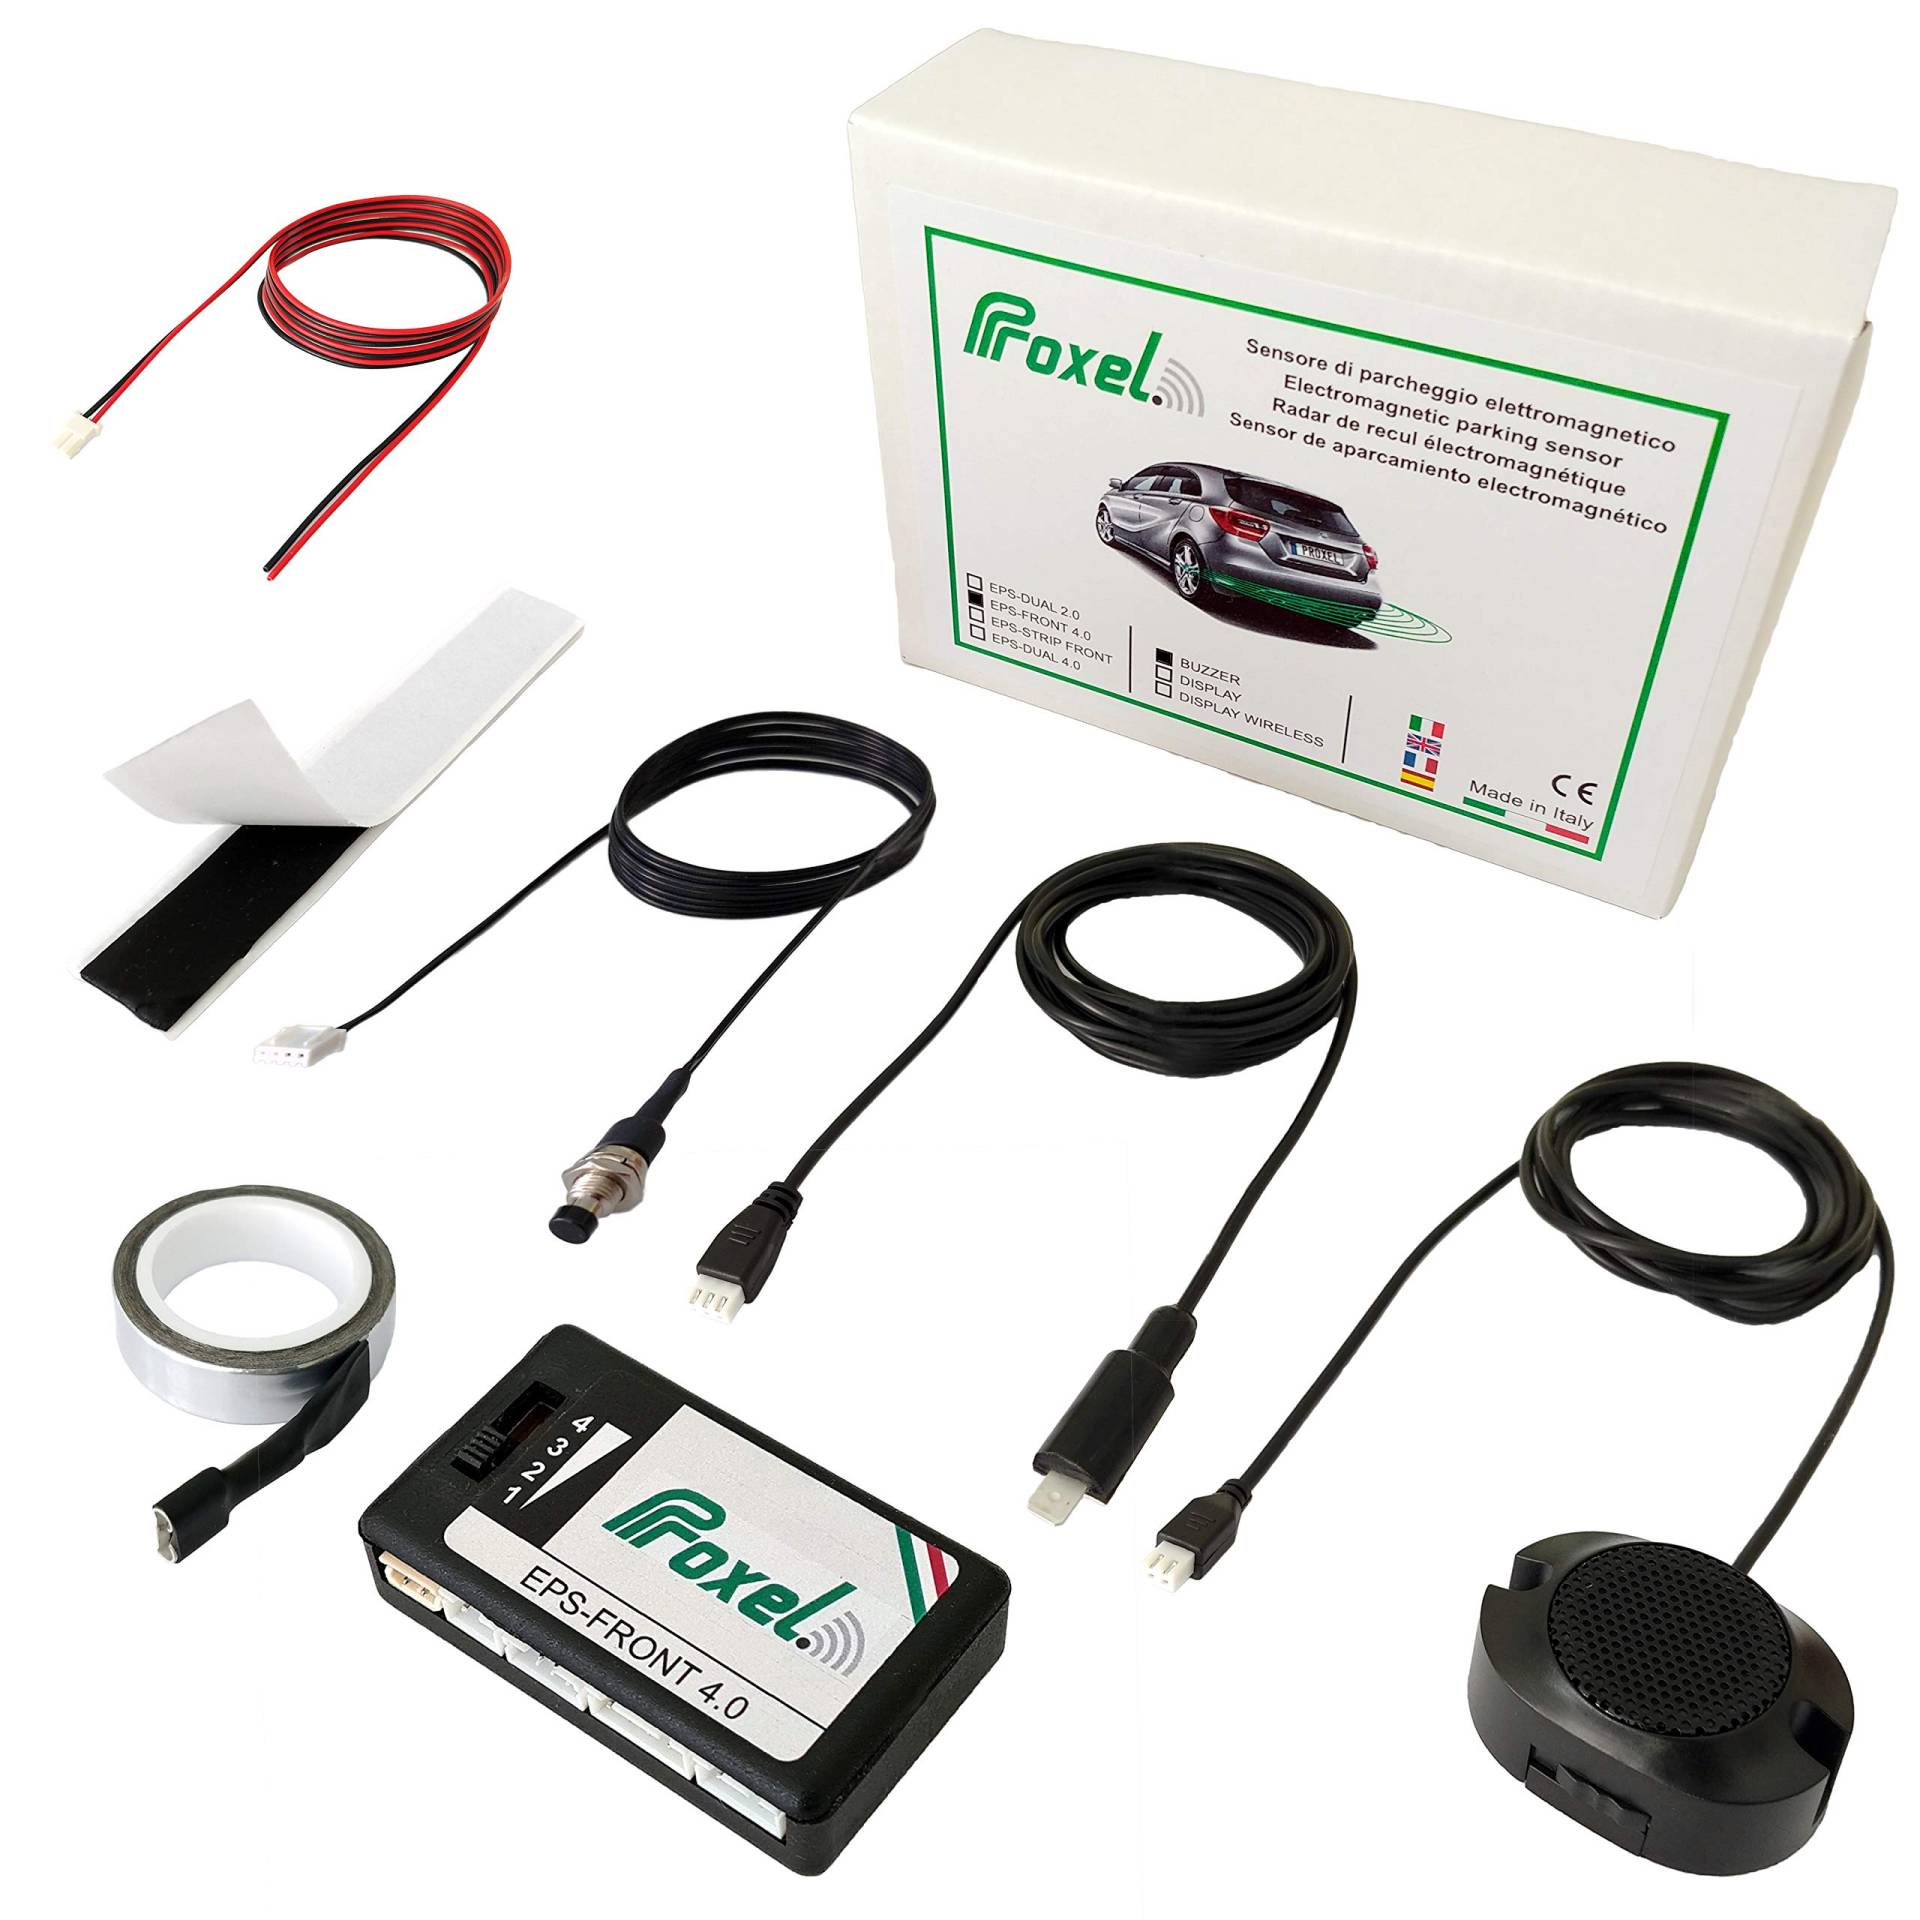 Proxel - Unsichtbare elektromagnetische Parksensoren EPS-FRONT 4.0, Front ohne Bohren der Stoßstange, Universal-Kit und Originalversion 2021 von Proxel